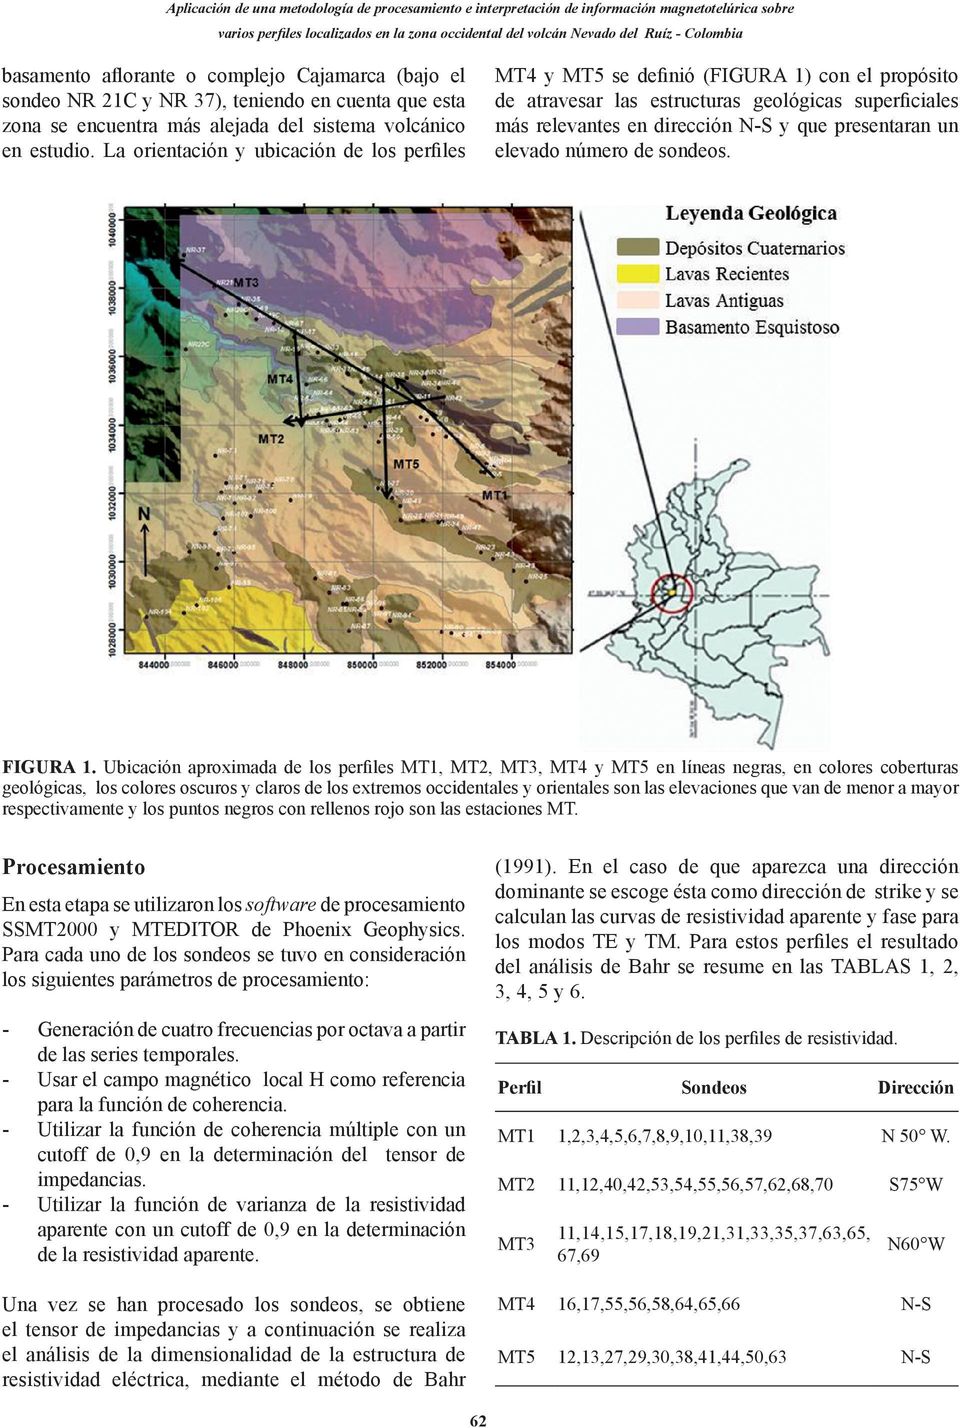 La orientación y ubicación de los perfiles MT4 y MT5 se definió (FIGURA 1) con el propósito de atravesar las estructuras geológicas superficiales más relevantes en dirección N-S y que presentaran un